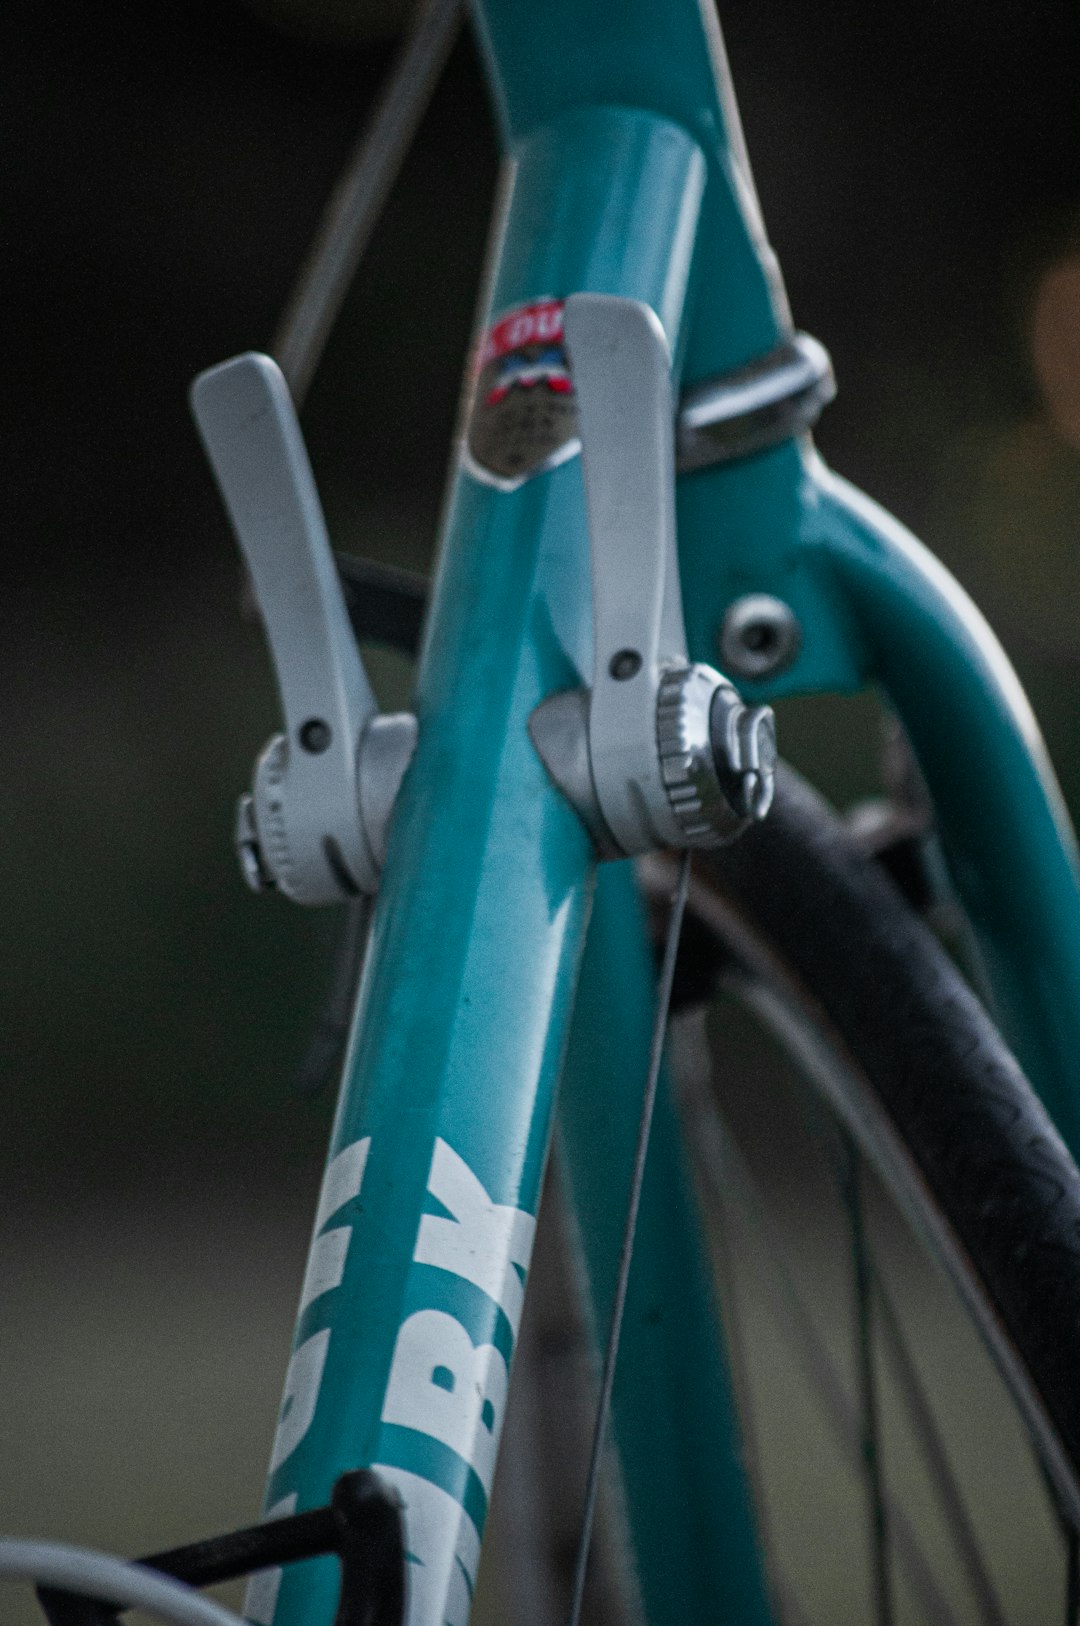 blue bicycle handle bar in tilt shift lens